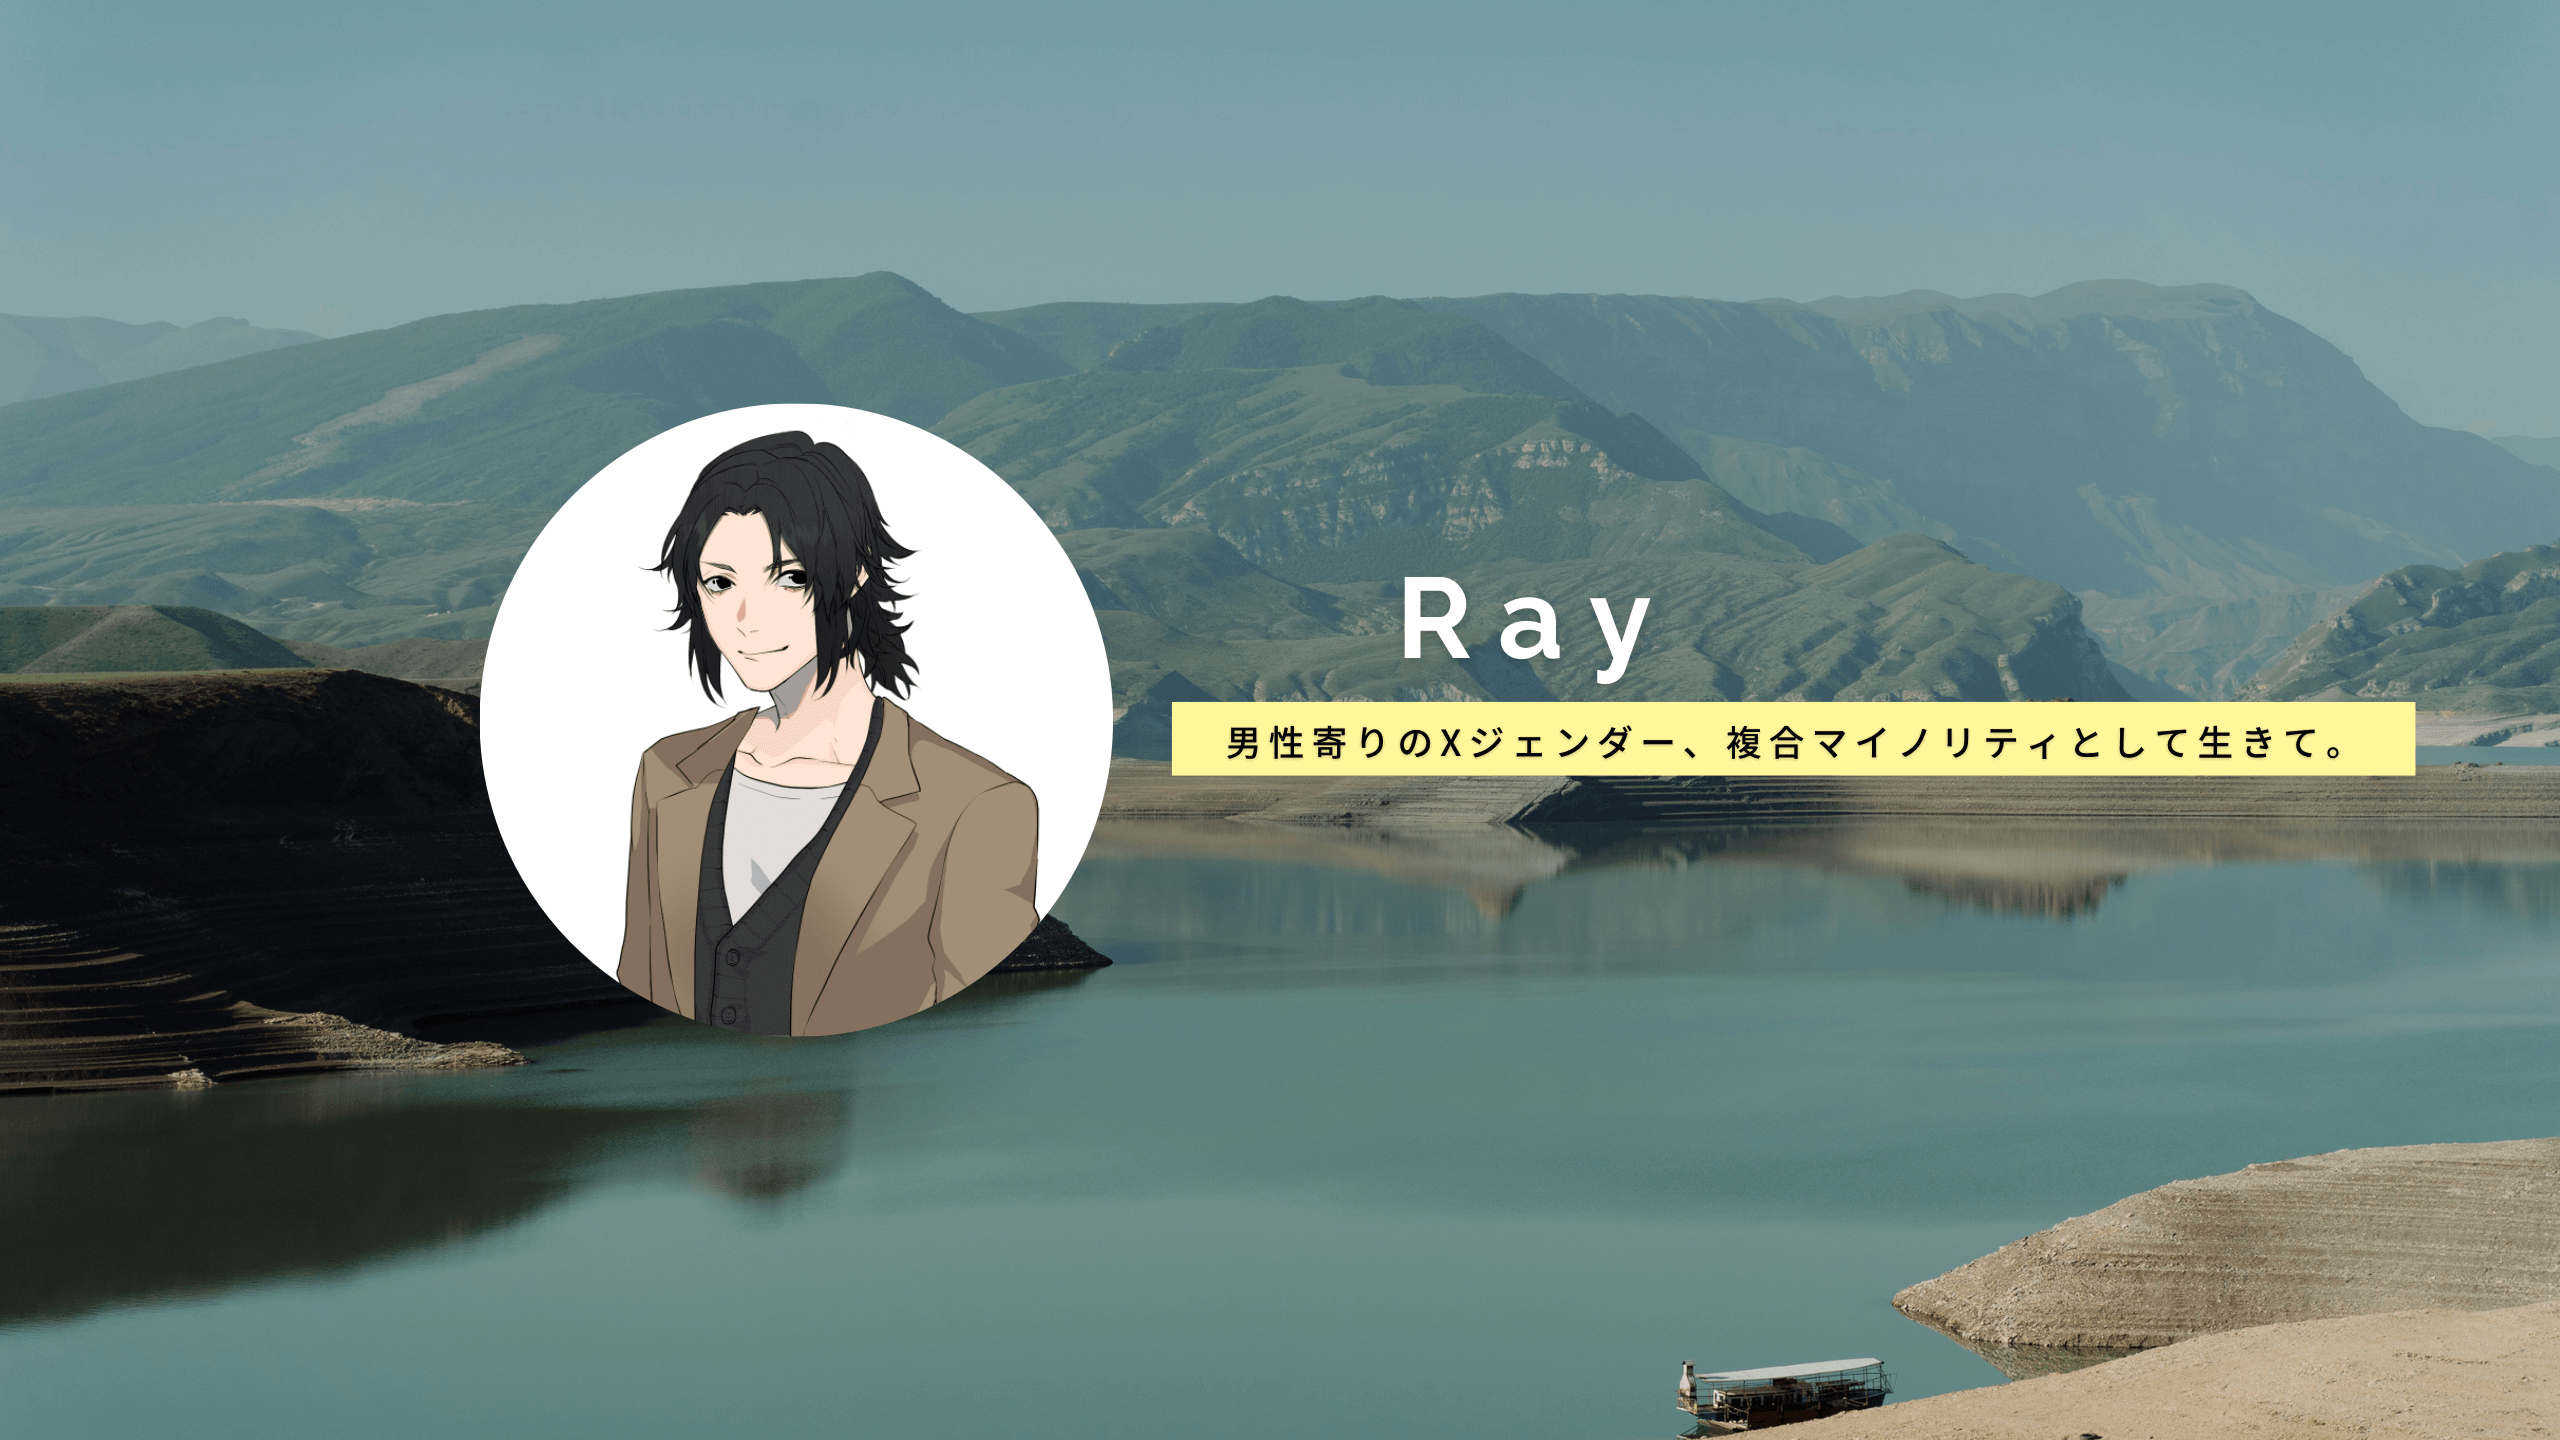 【Ray(れい)の自己紹介】男性寄りのXジェンダー、複合マイノリティとして生きて。